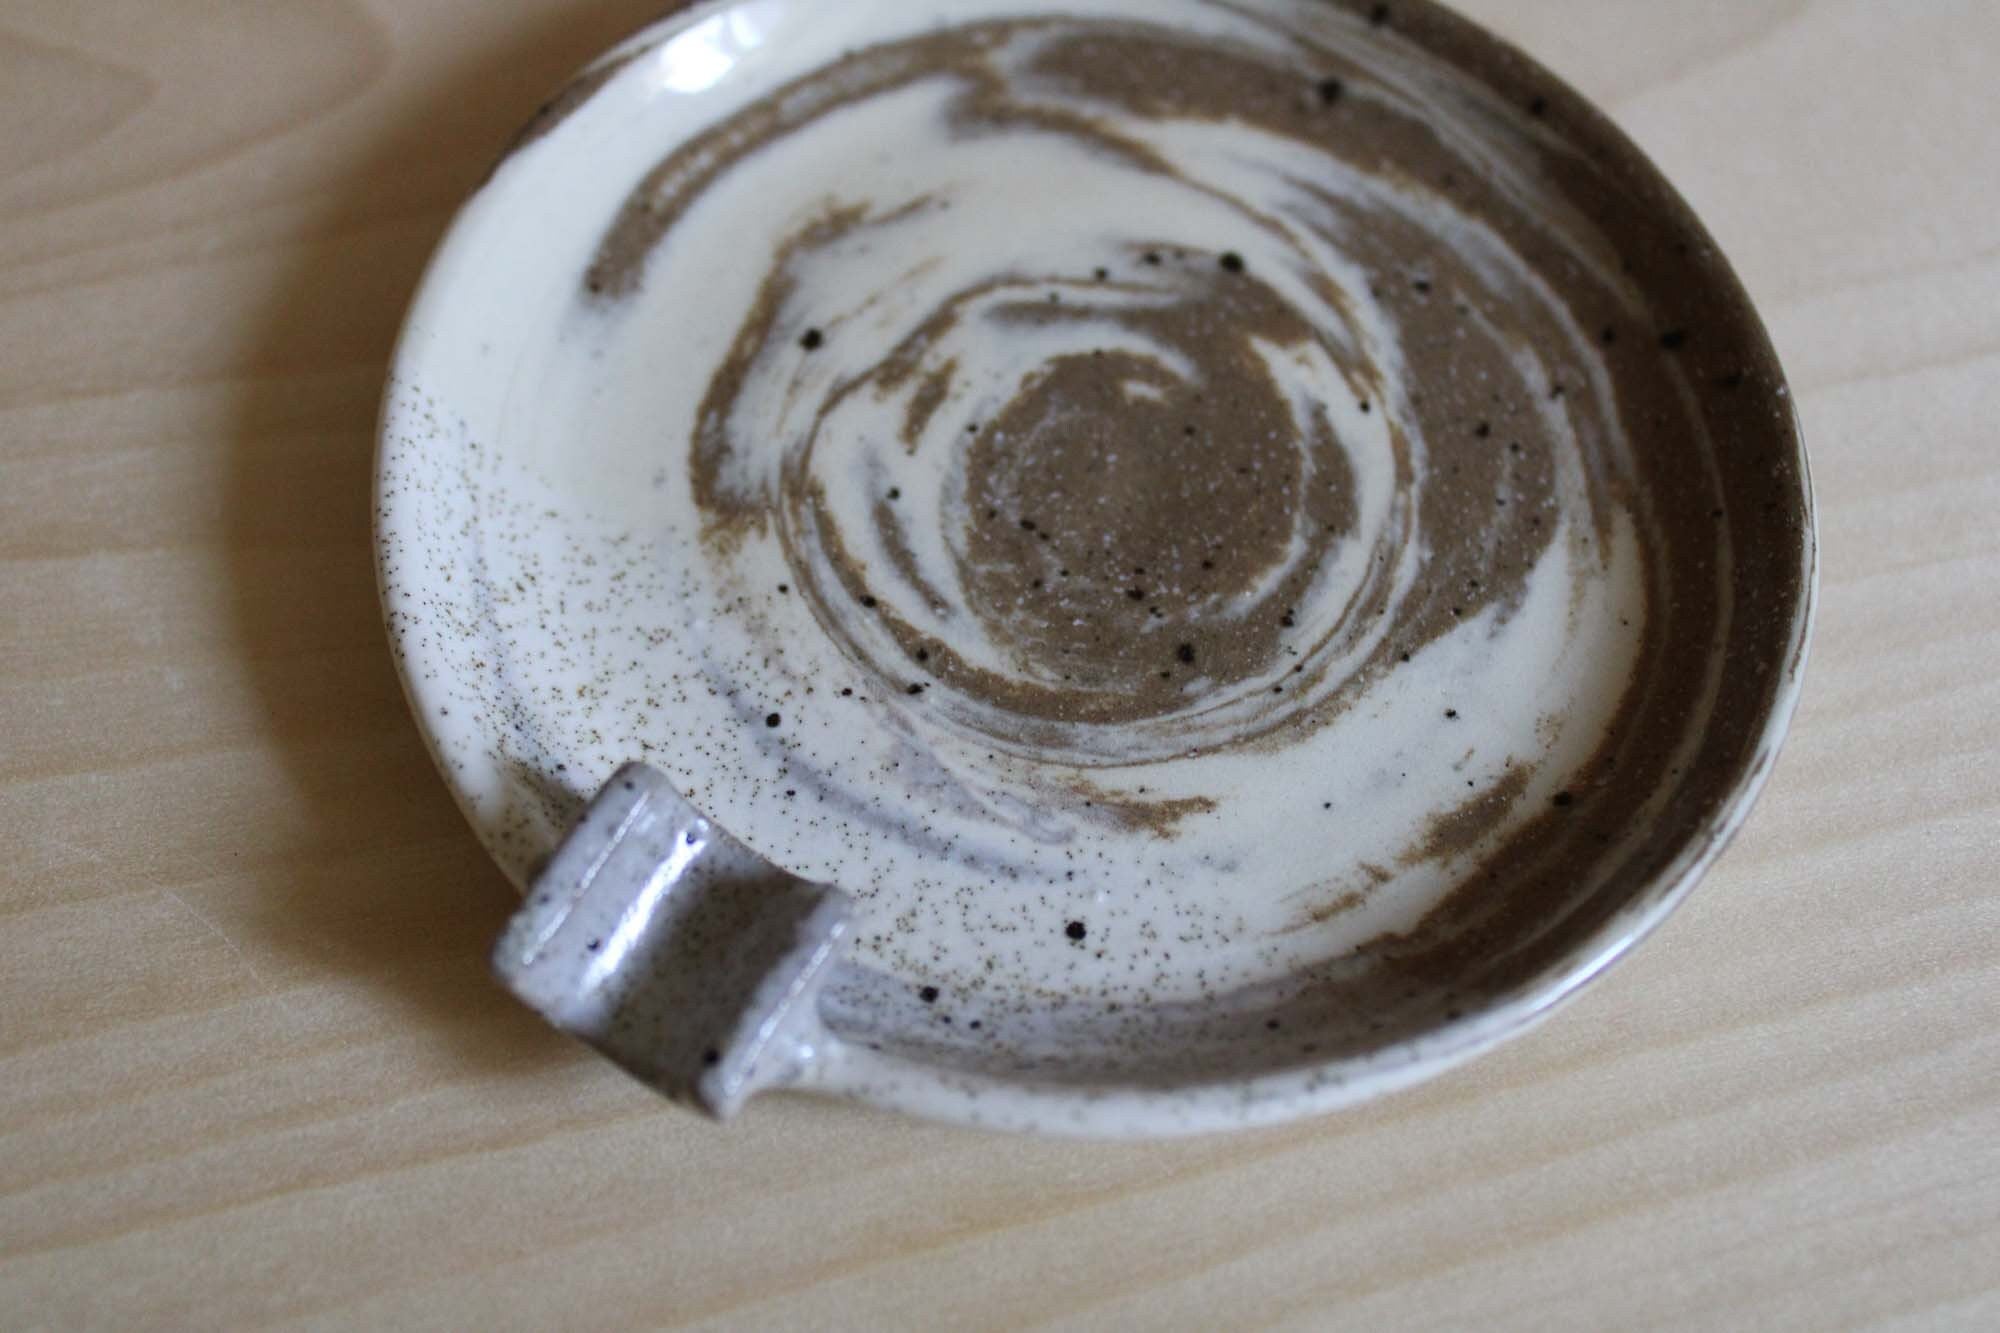 Mixed Clay Handmade Ceramic Ashtray, Trinket Dish